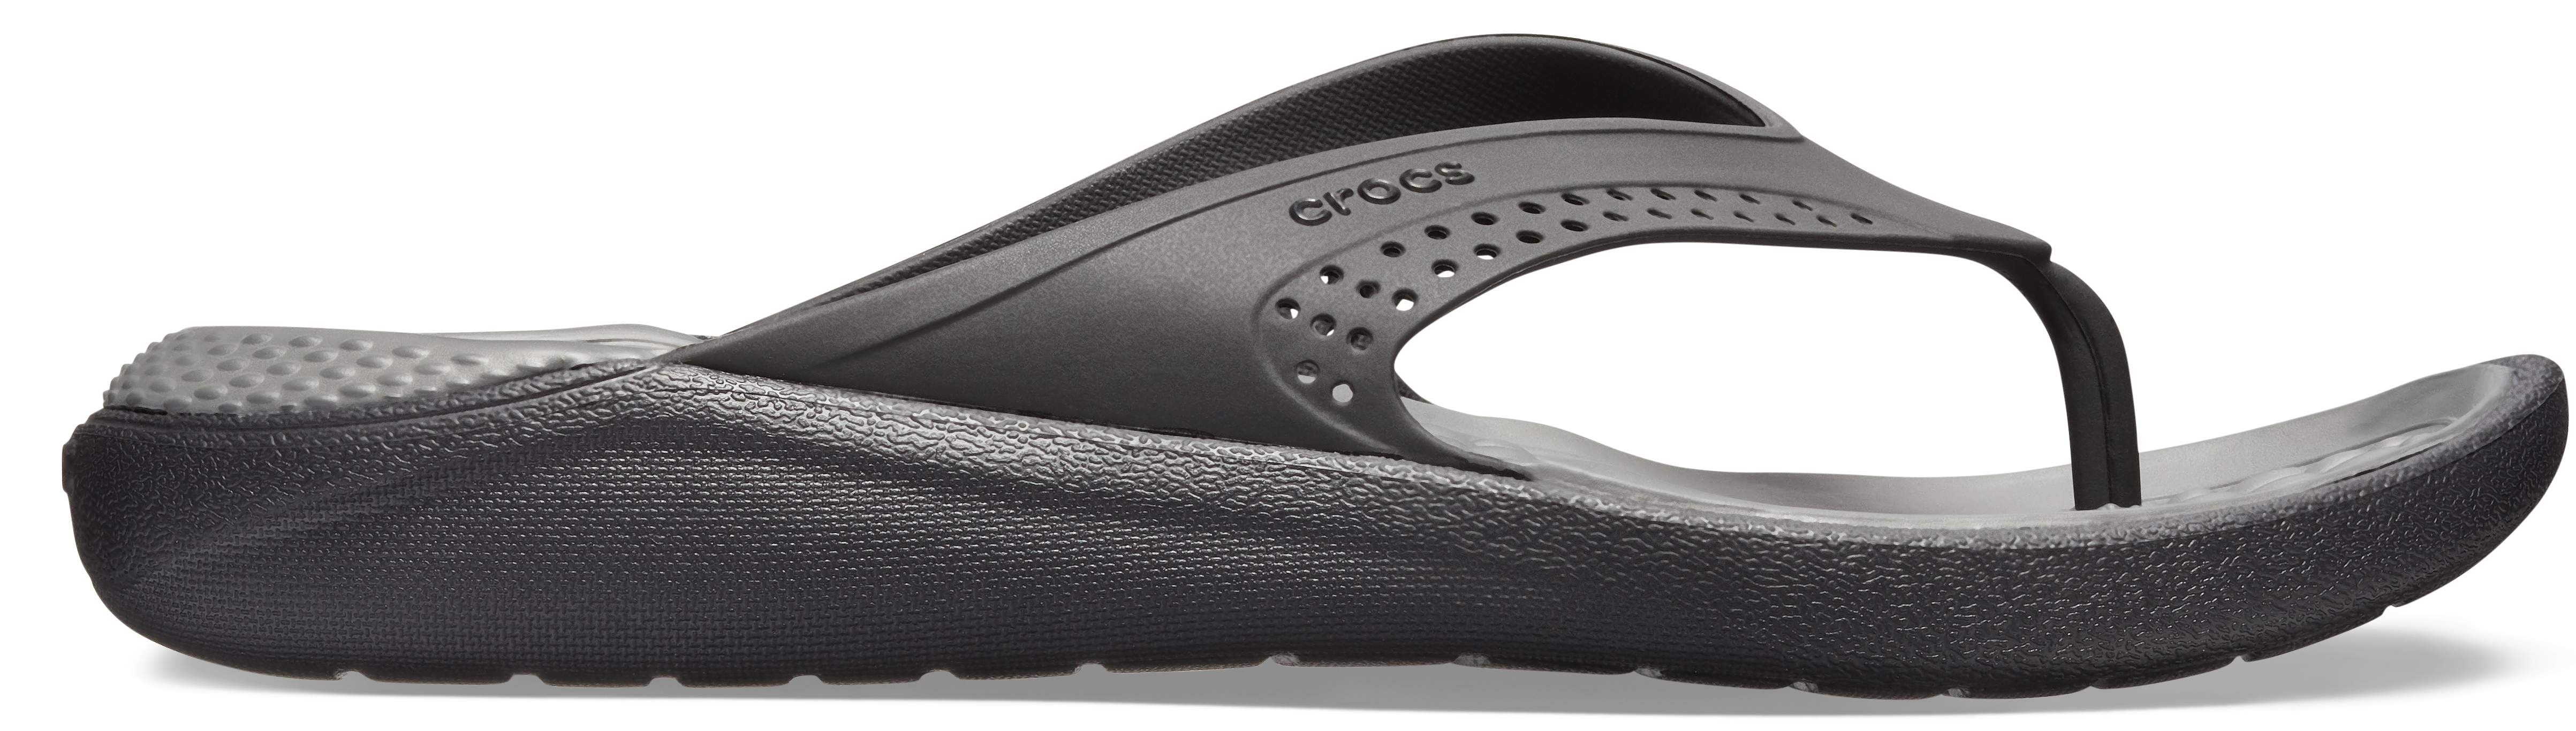 crocs unisex's literide flip flops